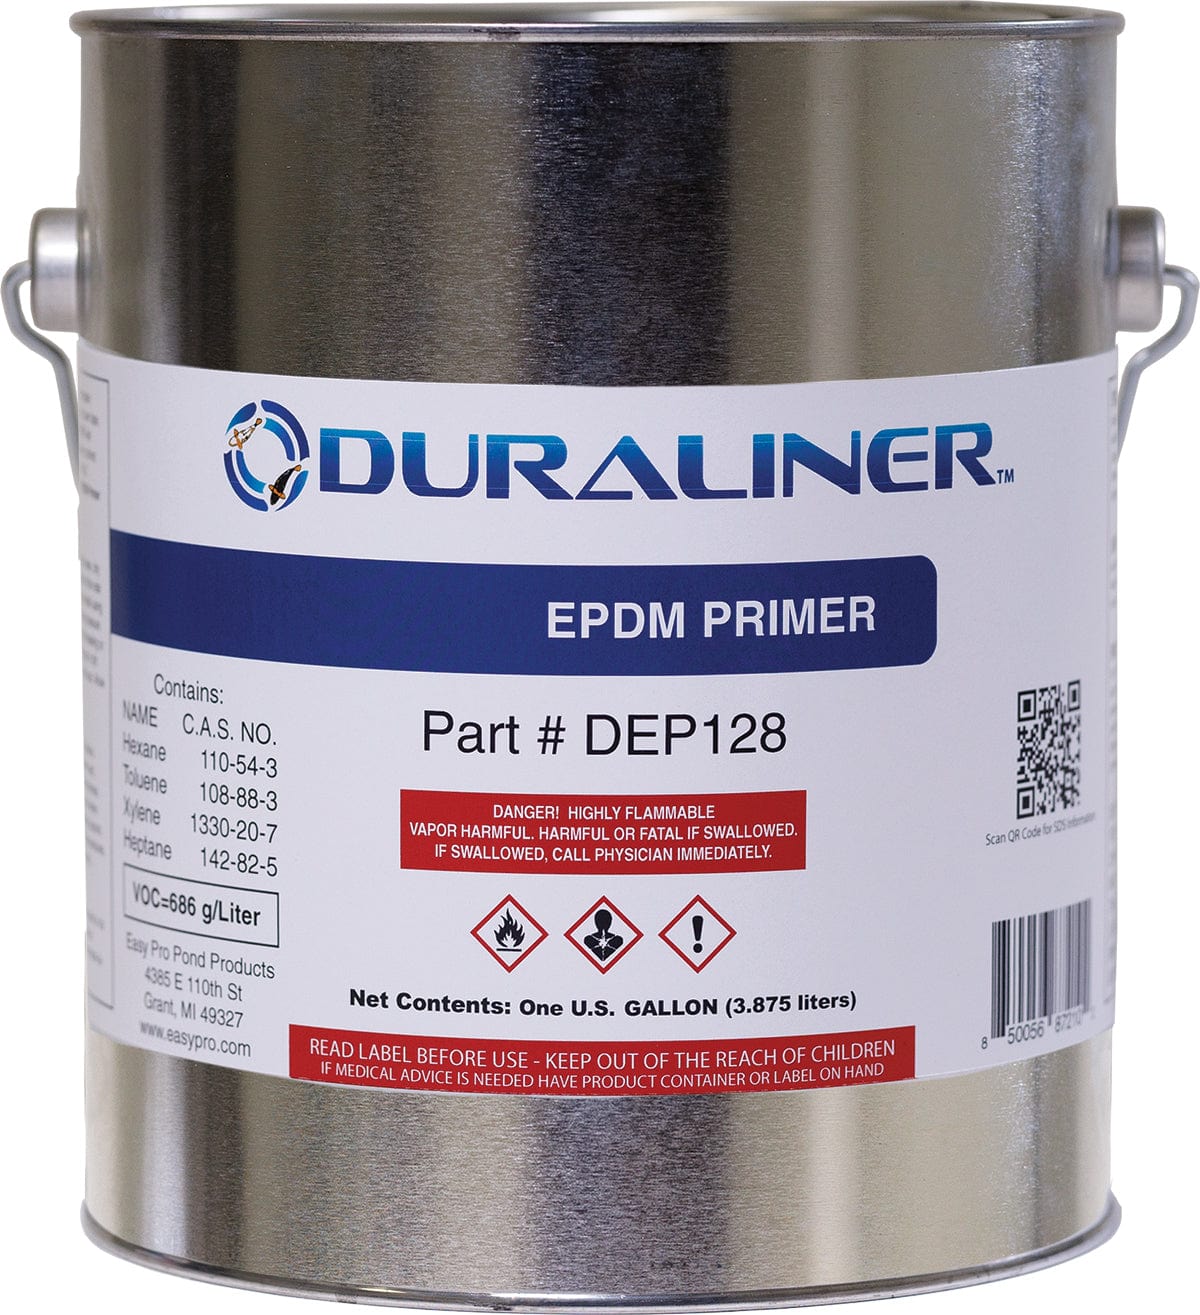 EasyPro Pond Liner and Accessories EPDM Primer- 1 gal. DuraLiner EPDM Primer